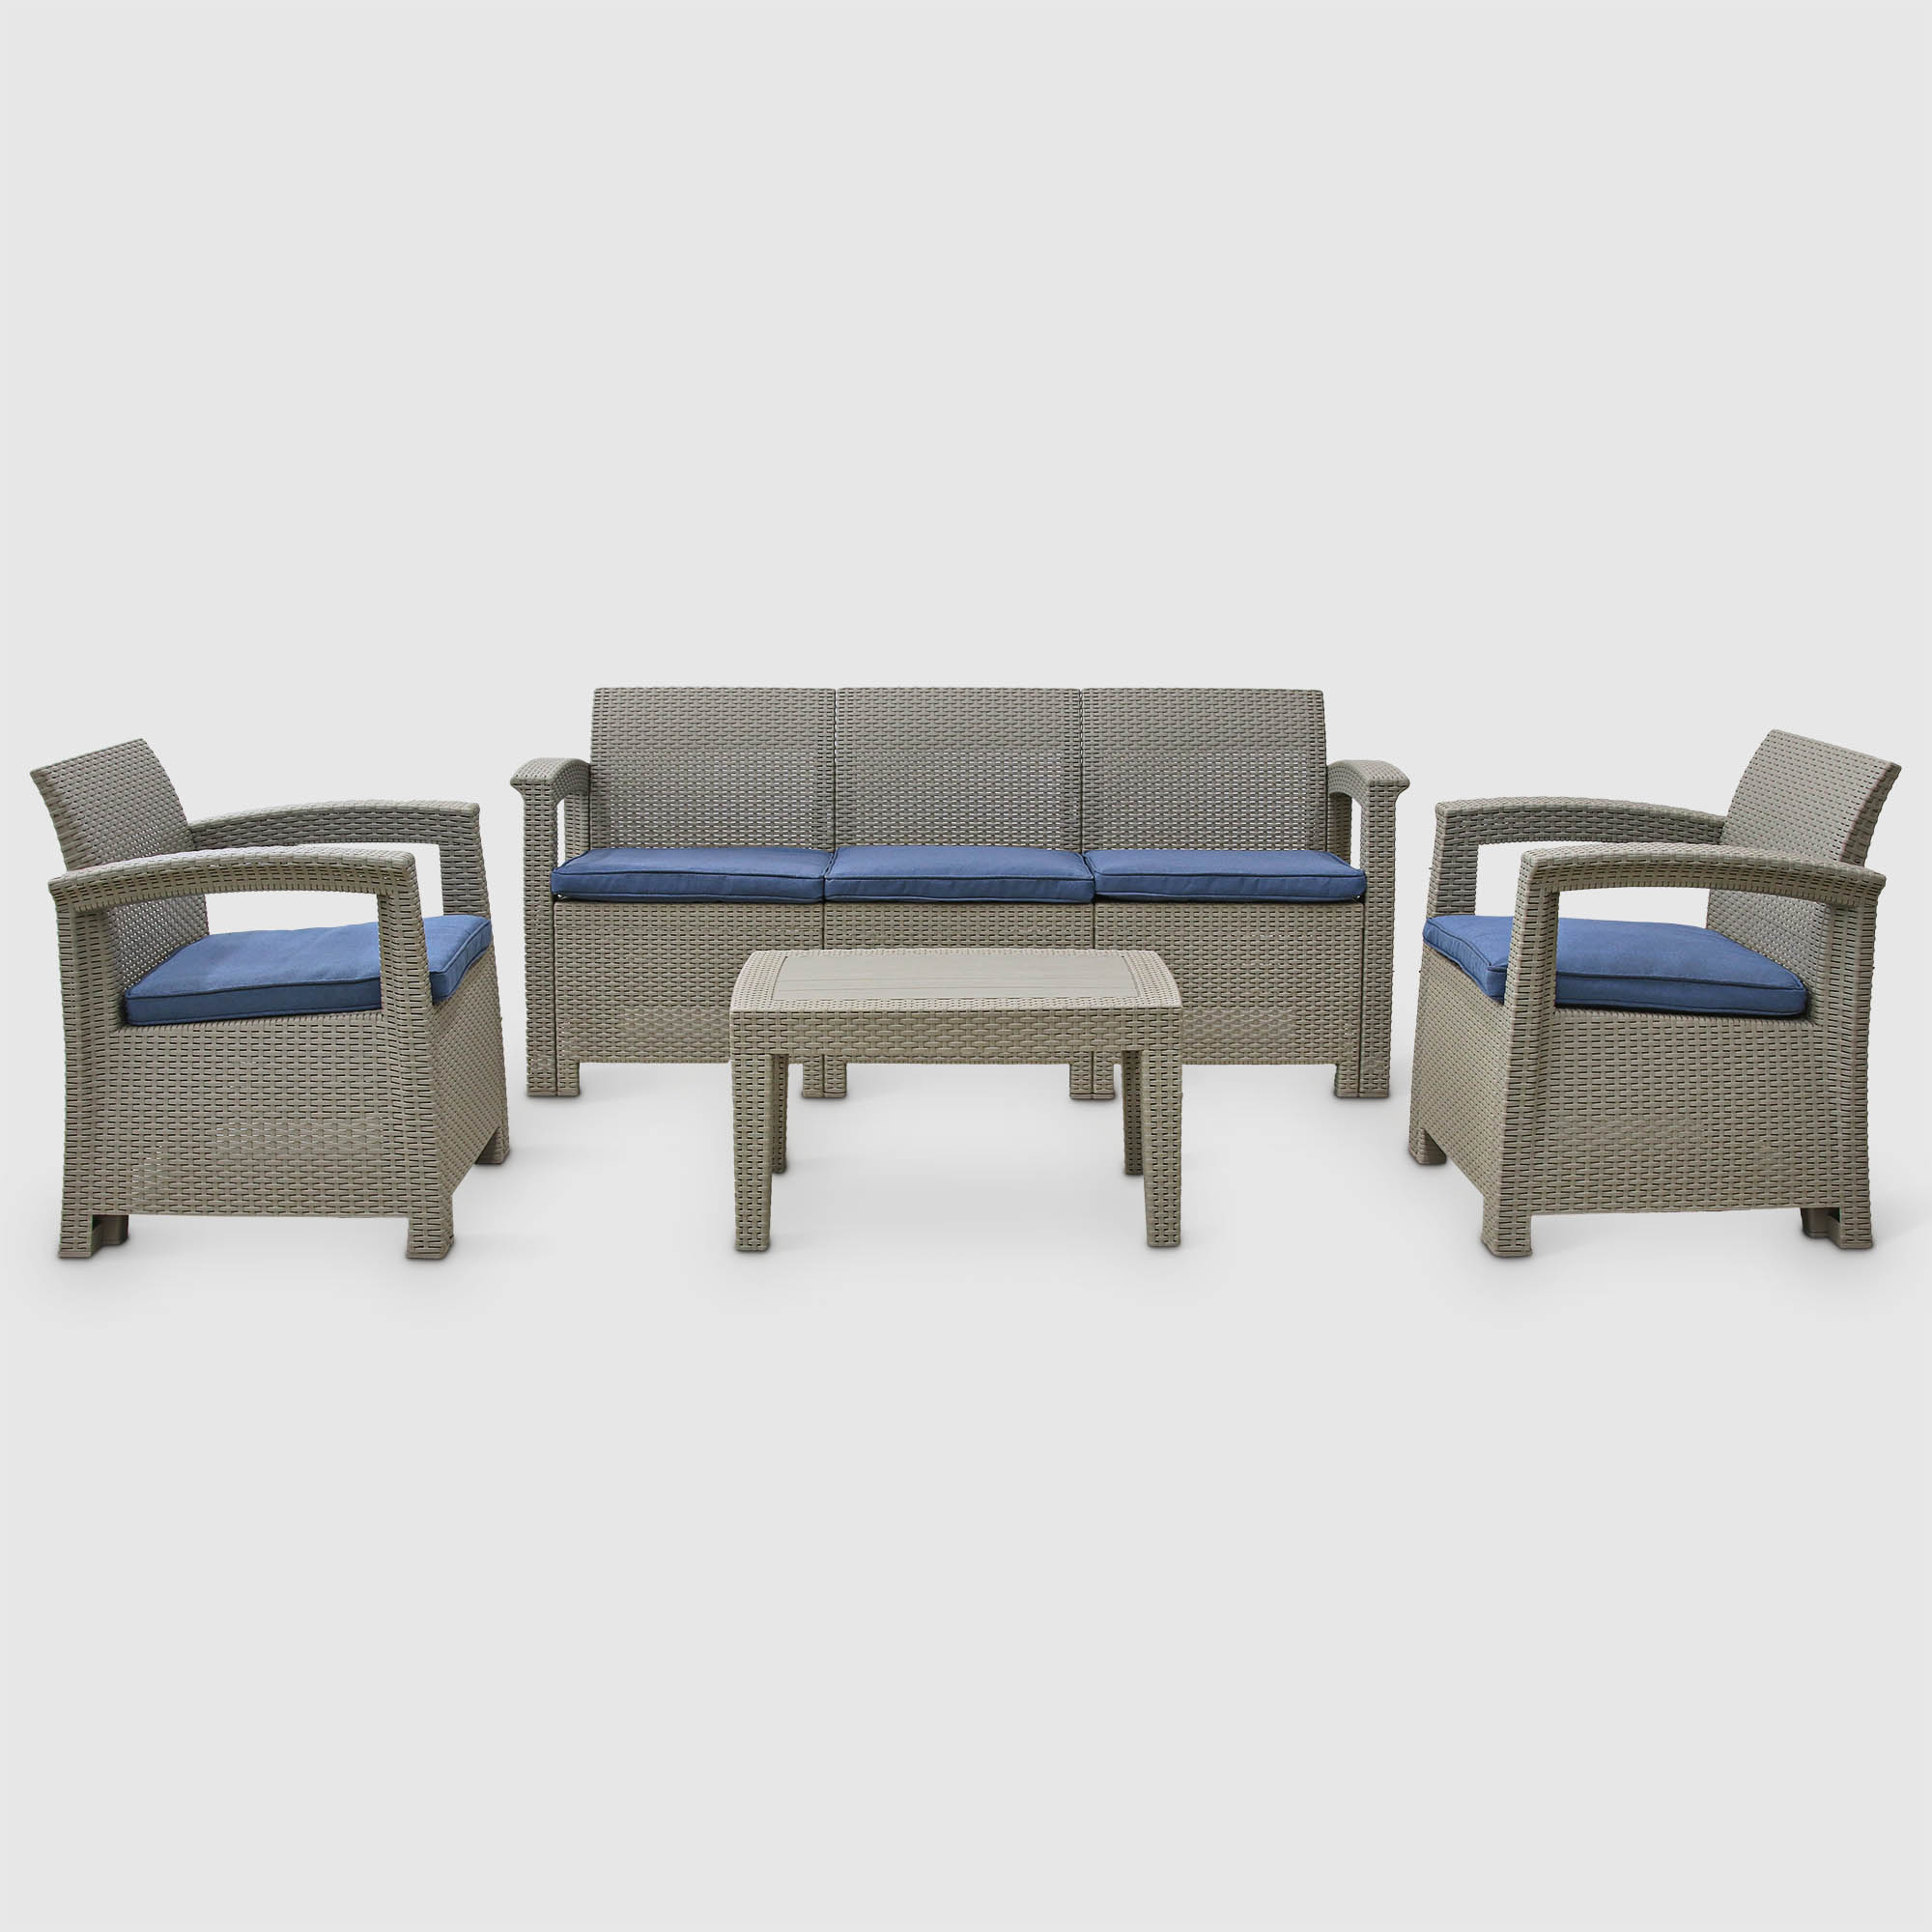 Комплект садовой мебели LF бежевый с синим из 4 предметов